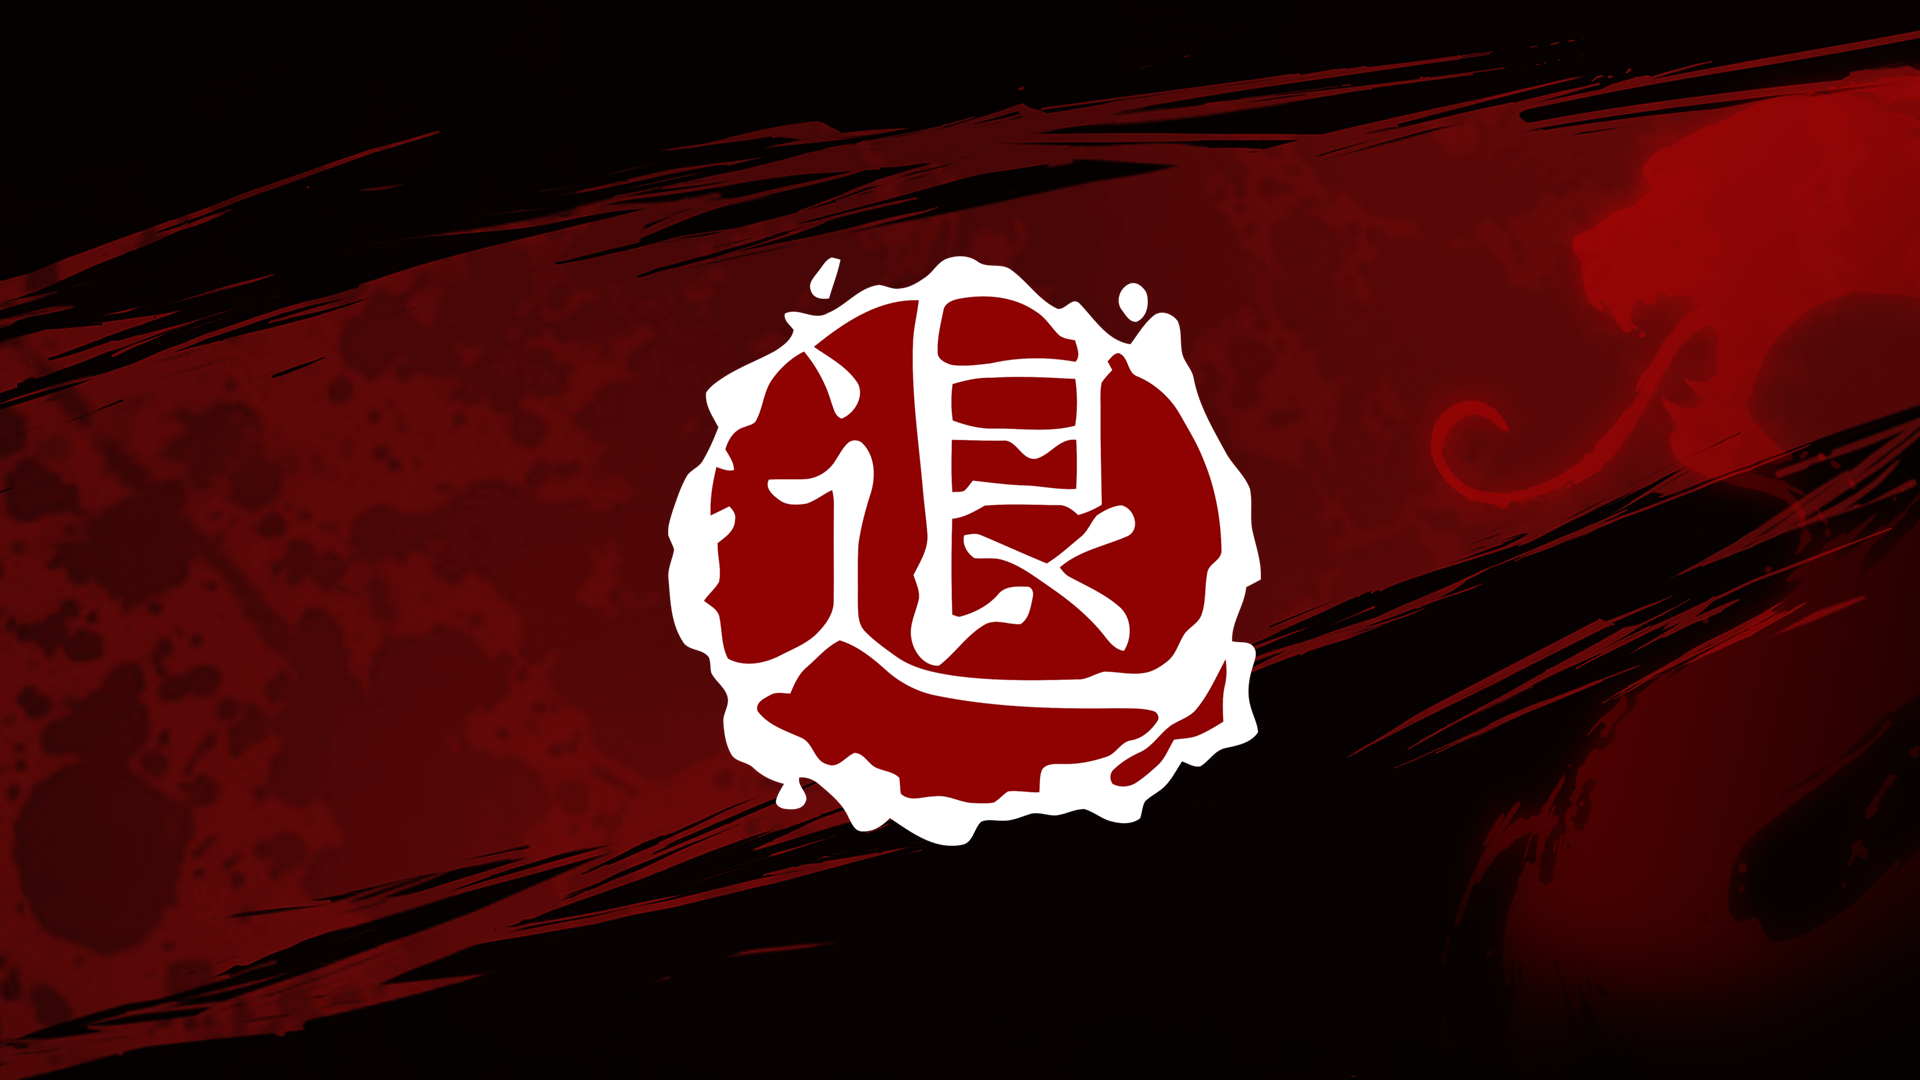 Icon for Bloodbath